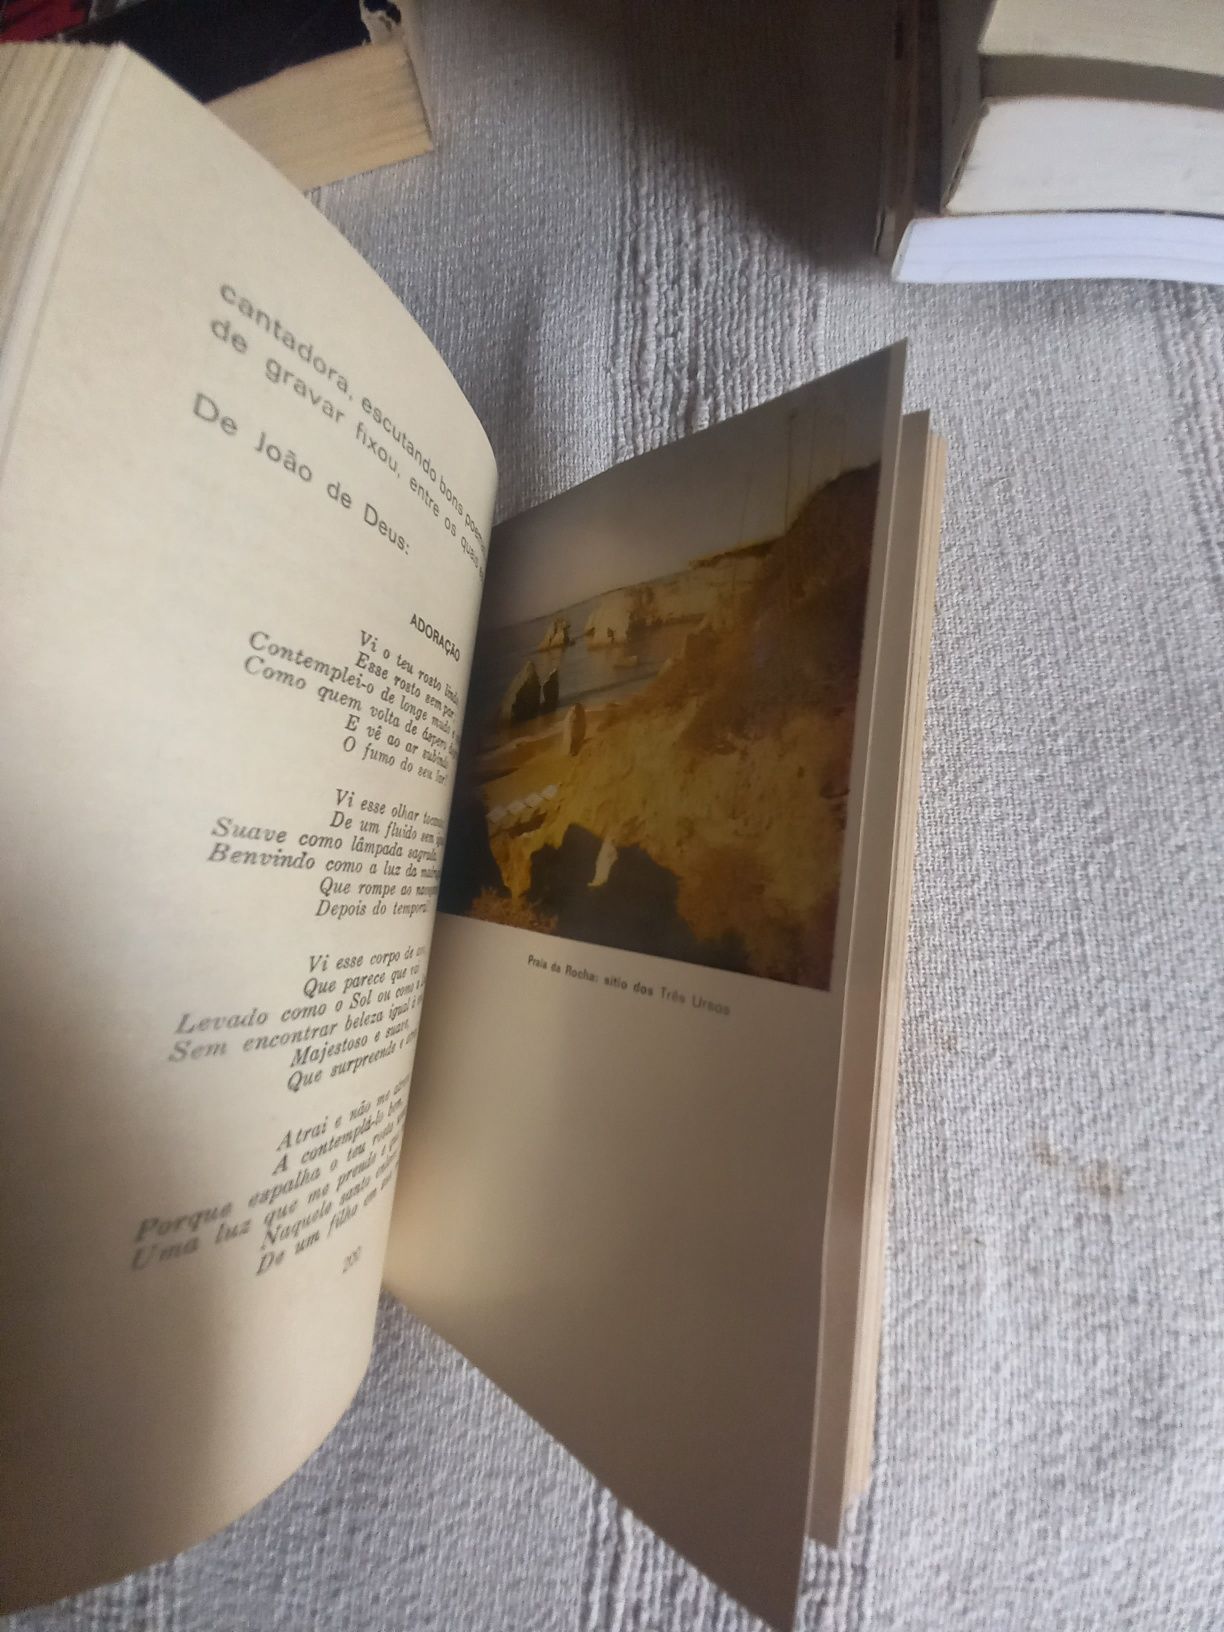 Livro da antiga colecção Educativa sobre o Algarve